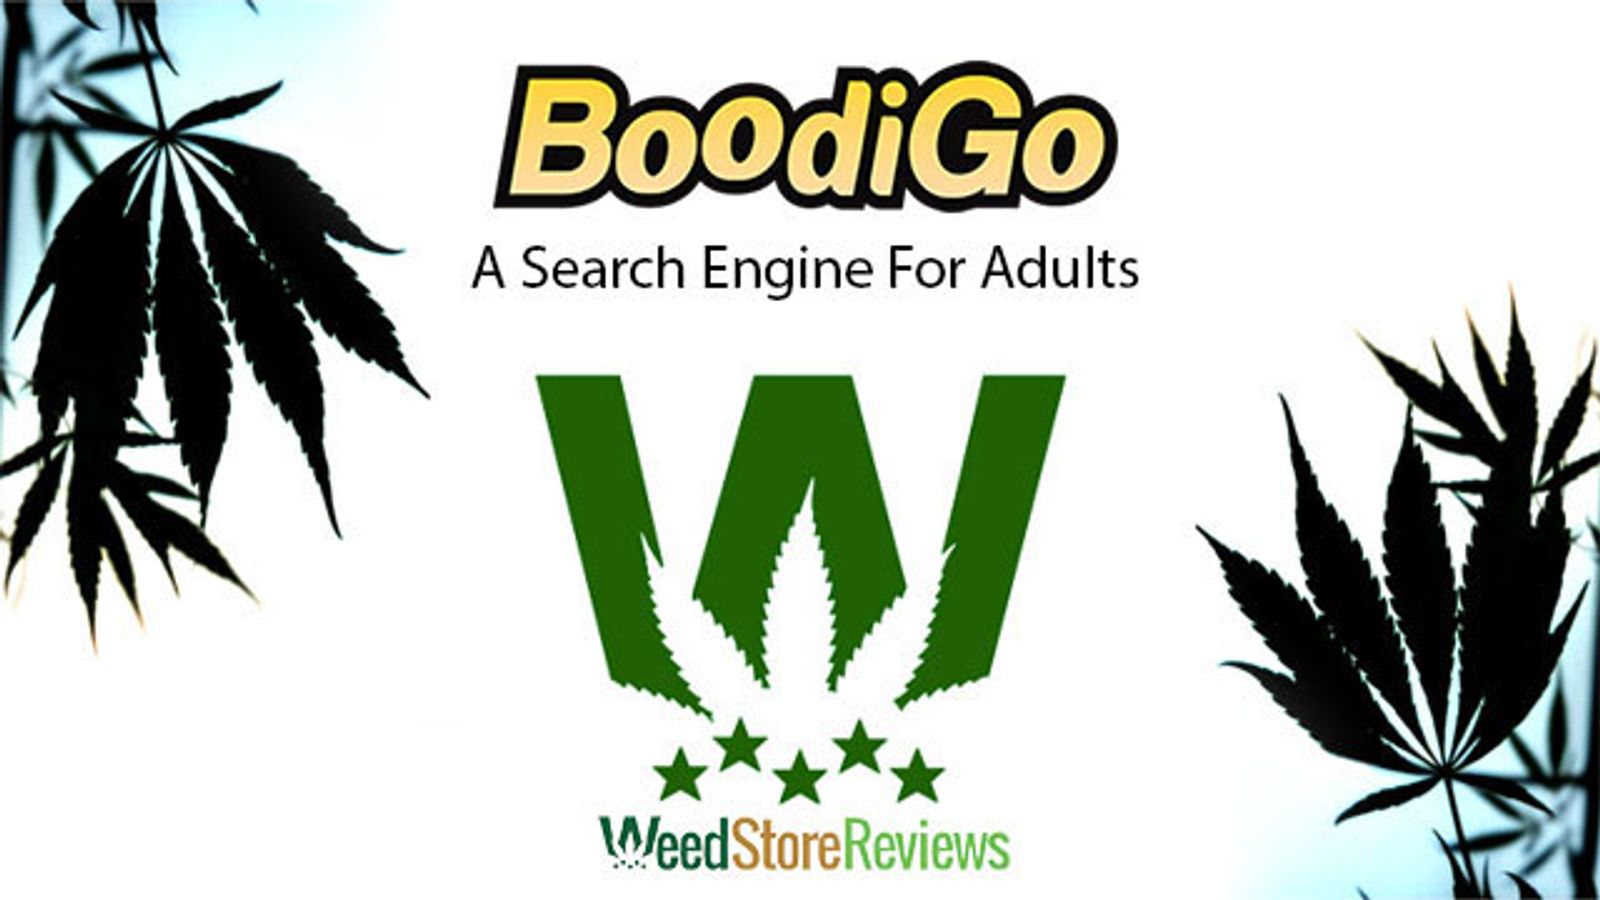 BoodiGo.com, WeedStore.Reviews Release Private Search Info For Legal Marijuana